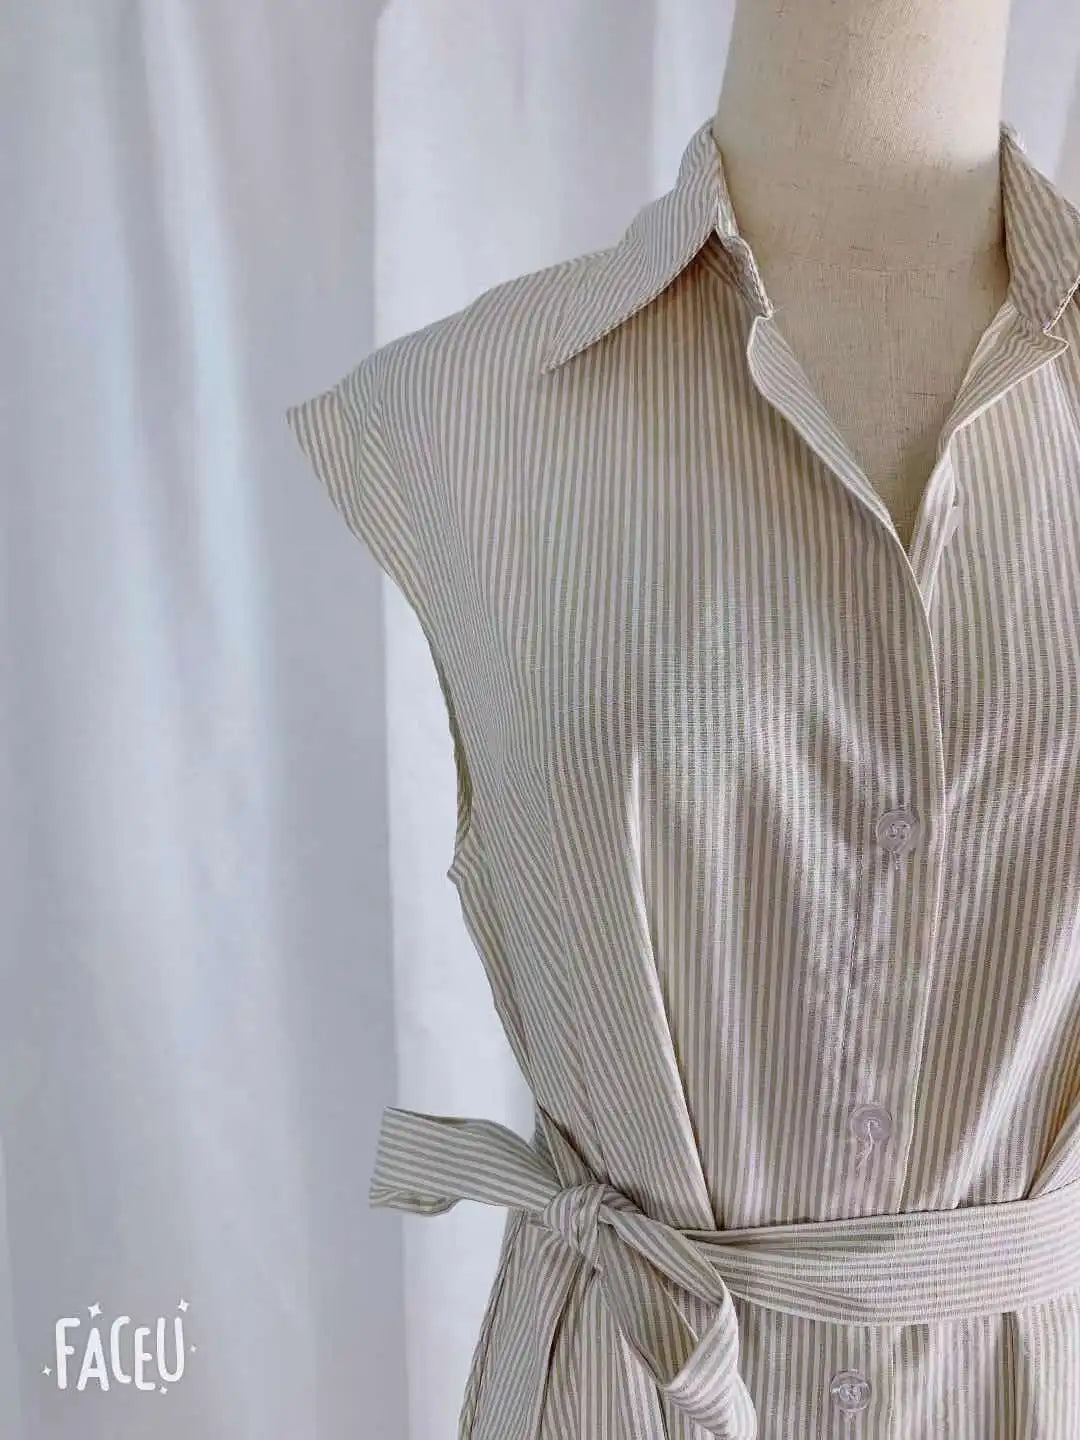 Summer Dress Shirt Dress Vintage Maxi Oversize